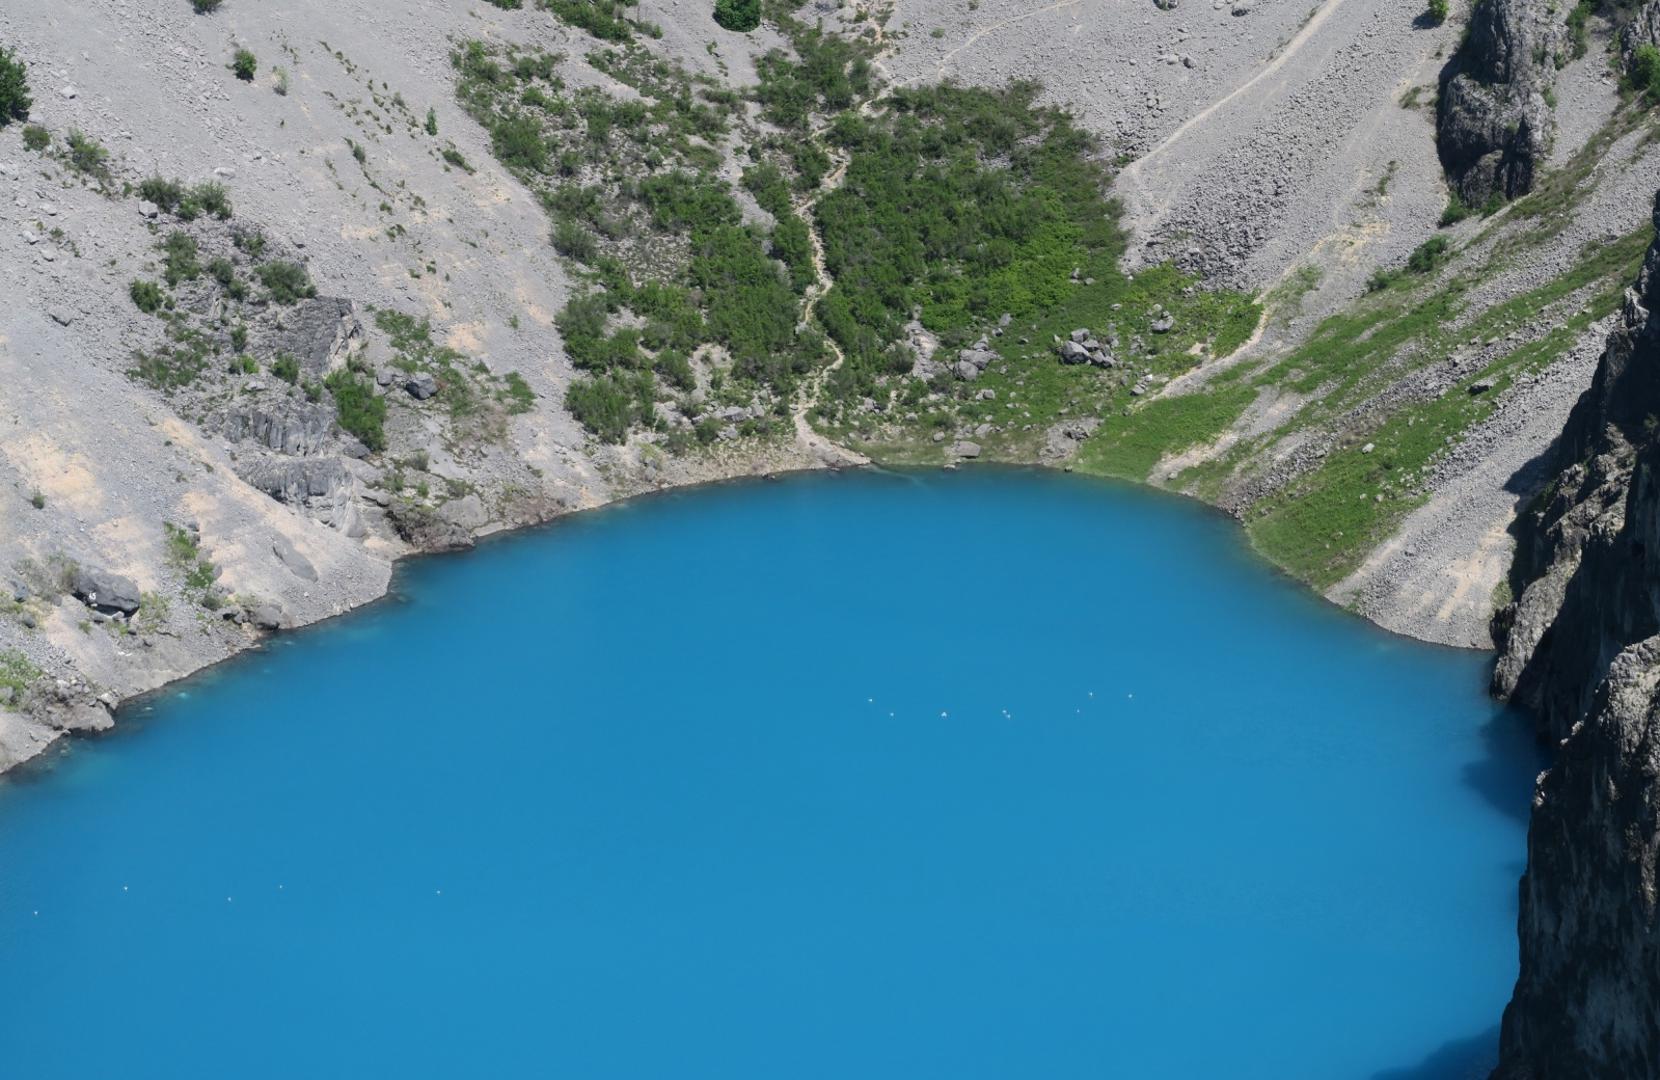 Modro jezero u Imotskom jedno je od najljepših krških jezera u Hrvatskoj.